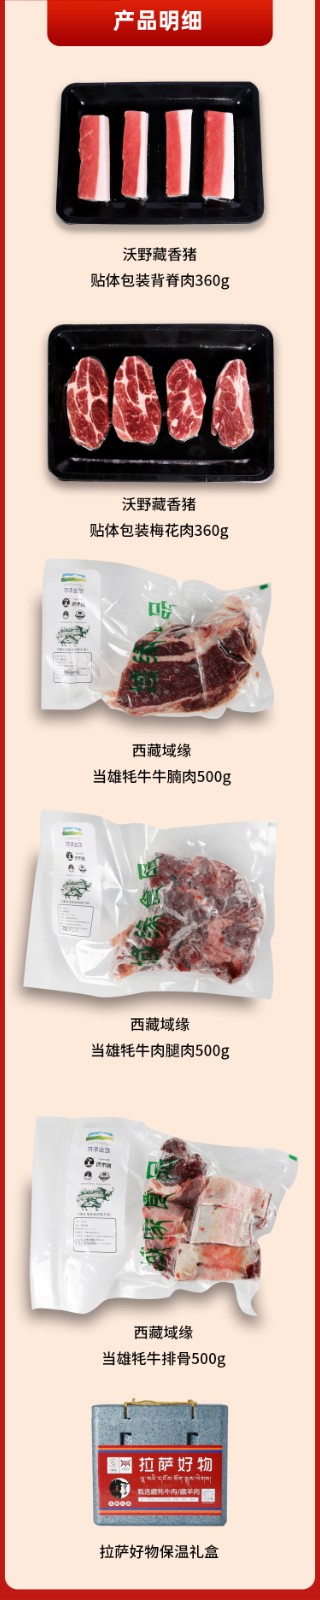 西藏冻鲜肉套餐三详情.jpg